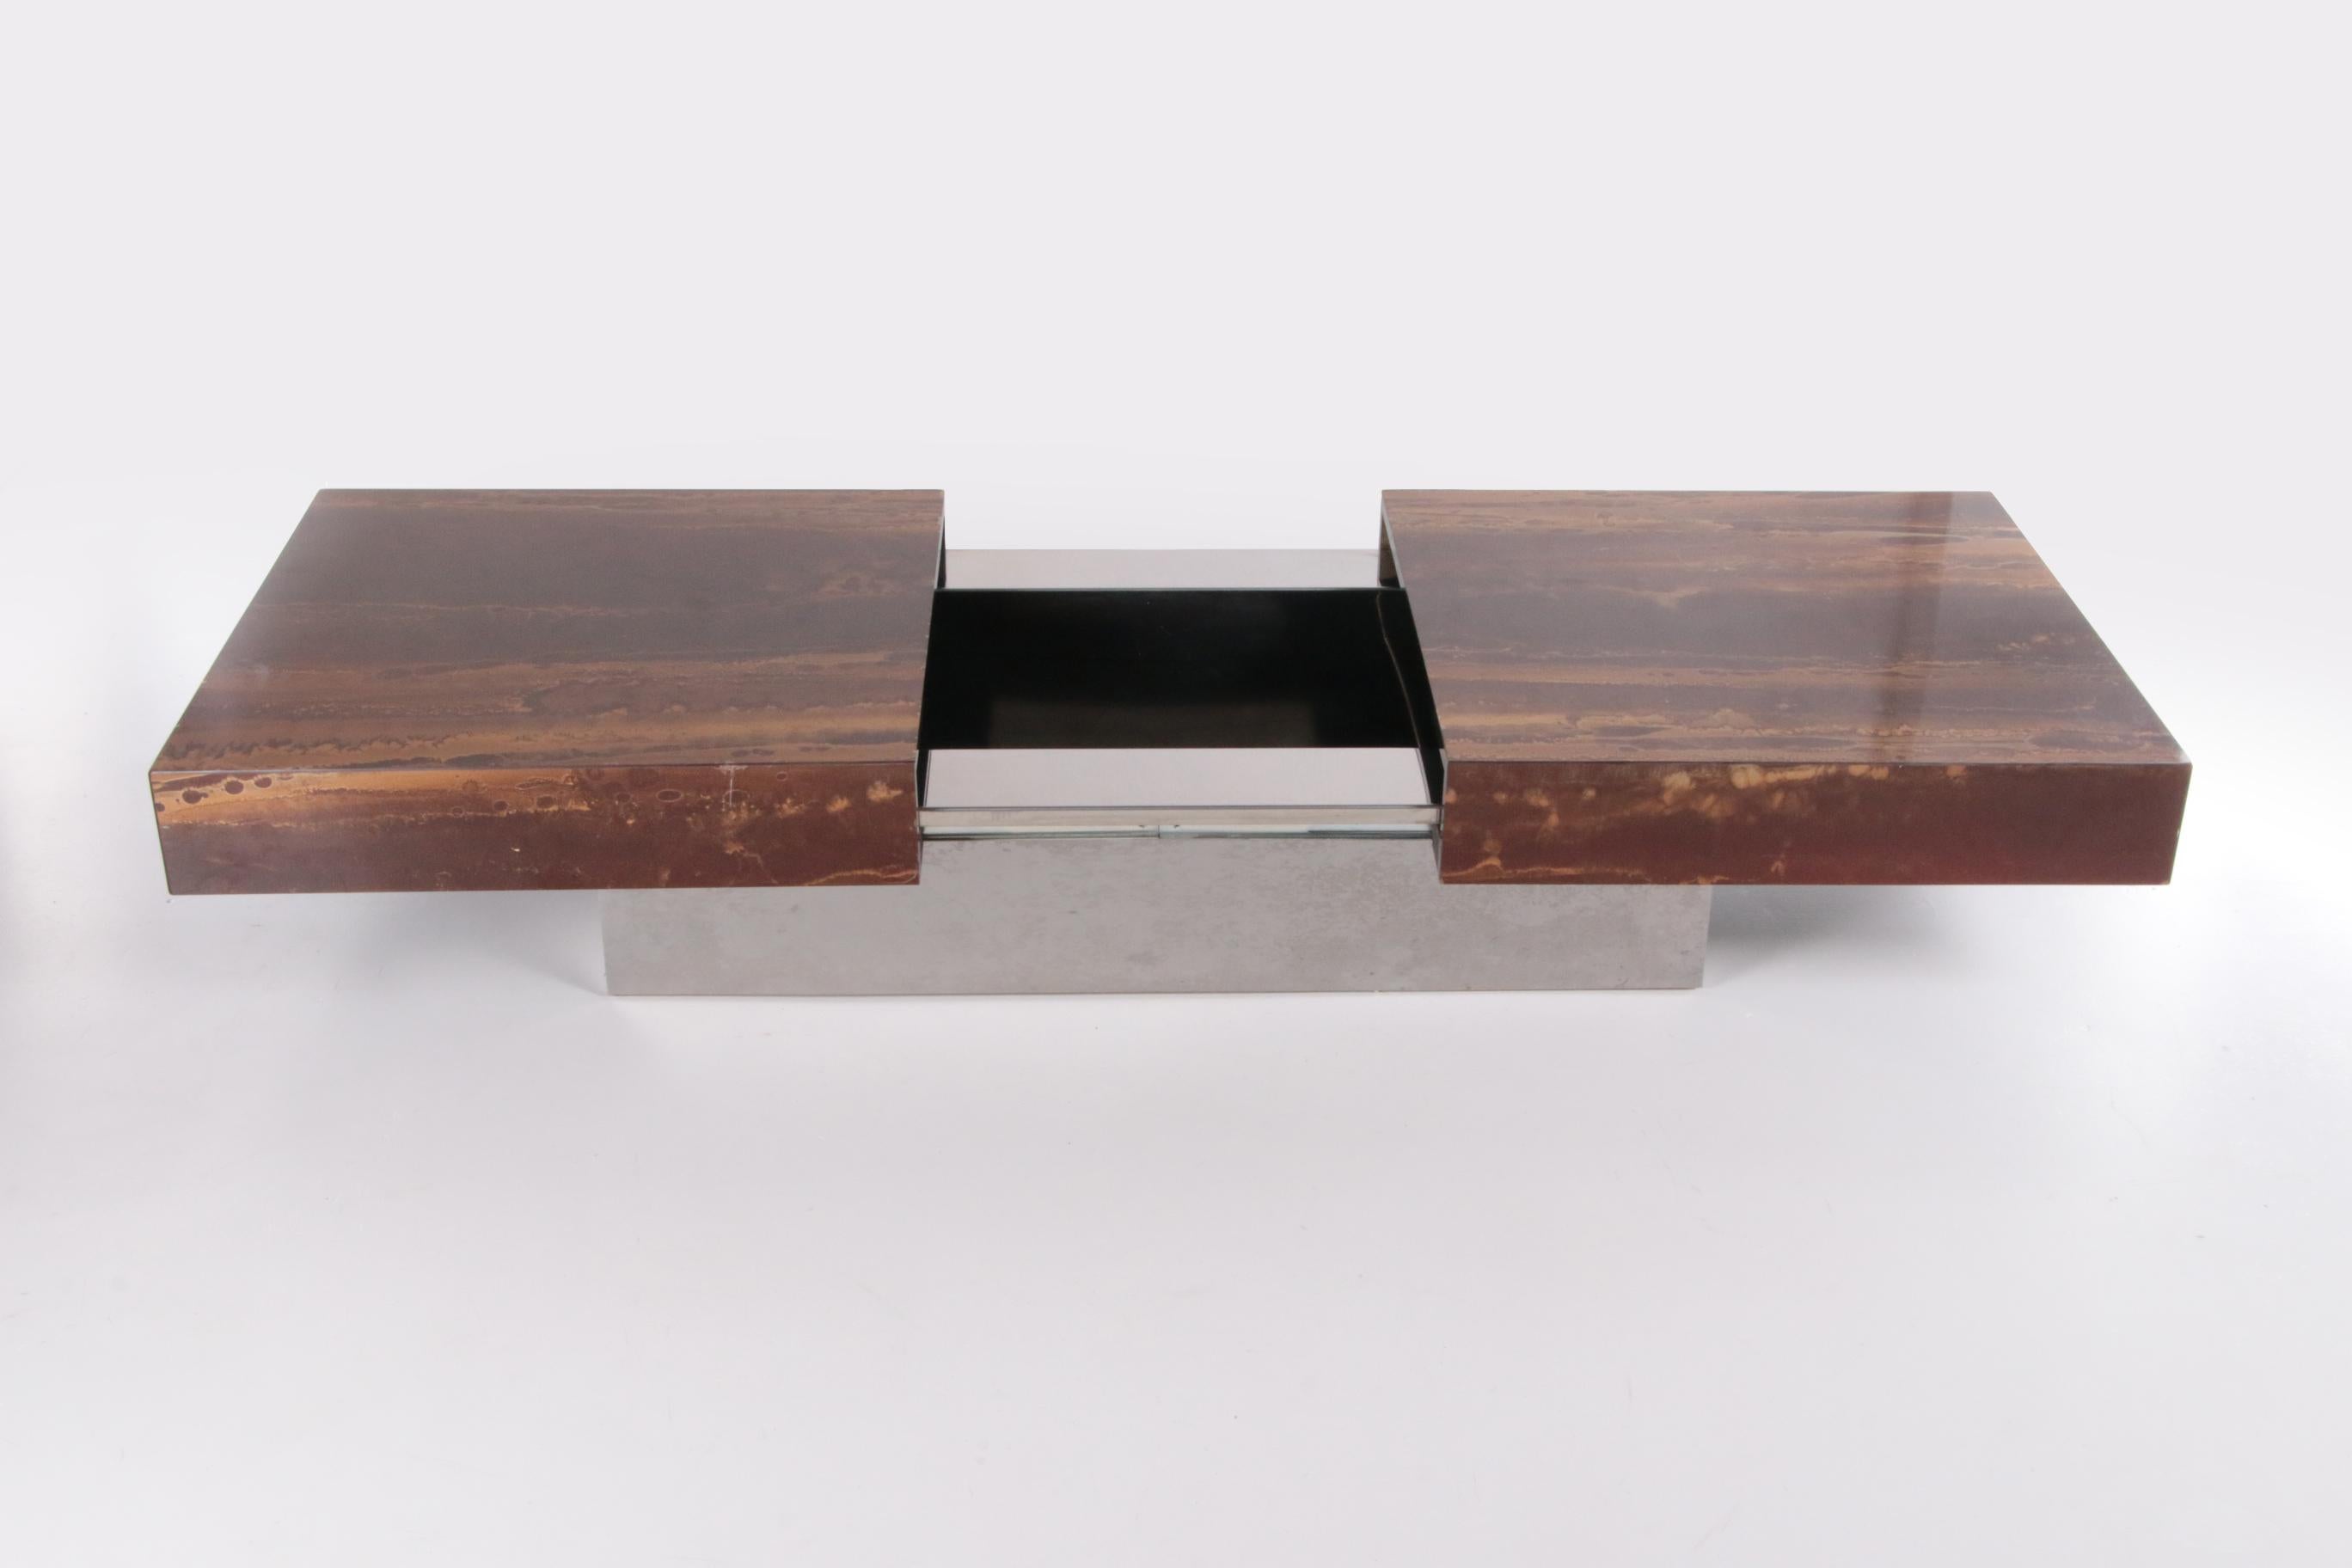 Ein schöner Couchtisch, entworfen von Aldo Tura in den 1970er Jahren. Der Tisch ist aus Holz mit einem schönen Muster gefertigt und mit einem Hochglanzlack versehen.

Die Tischplatten dieses Tisches lassen sich nach links und rechts verschieben, so